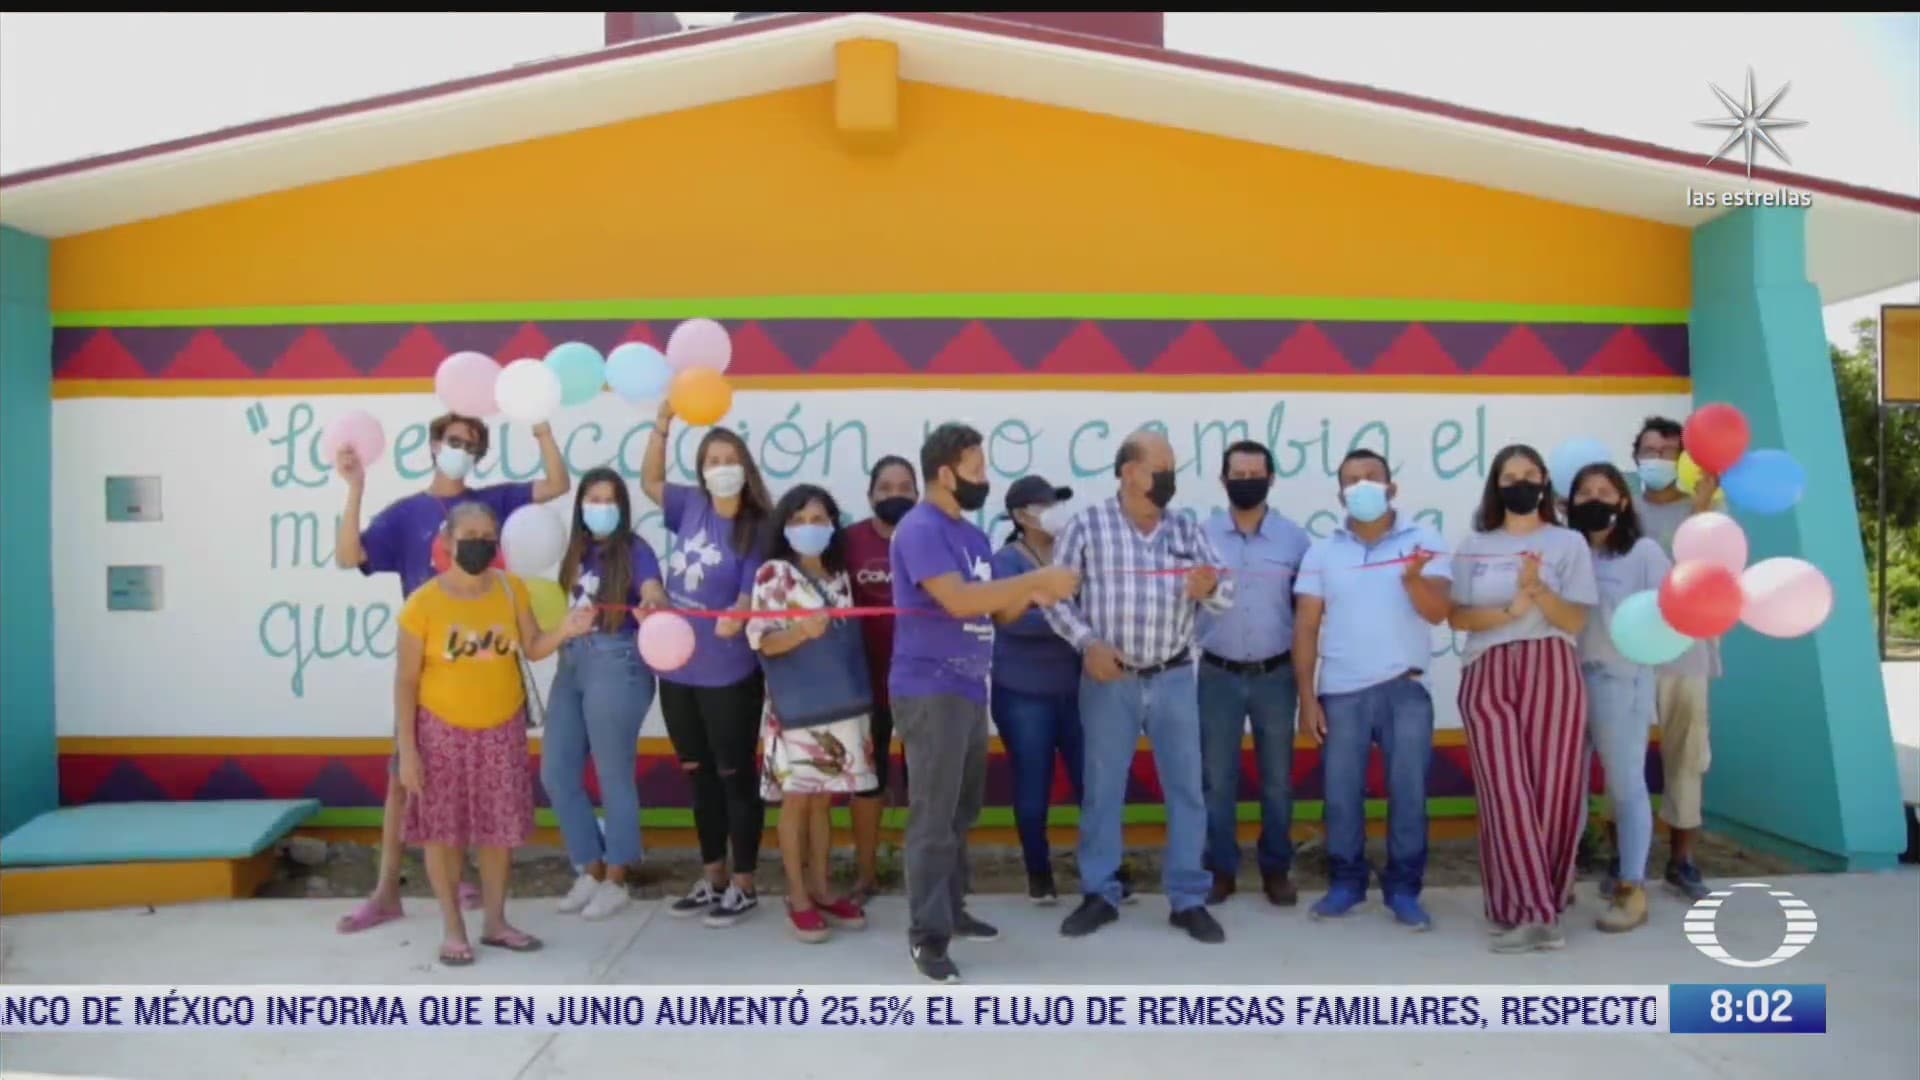 organizacion all hands and hearts rehabilita dos escuelas mas afectadas por sismo del 7 s en oaxaca